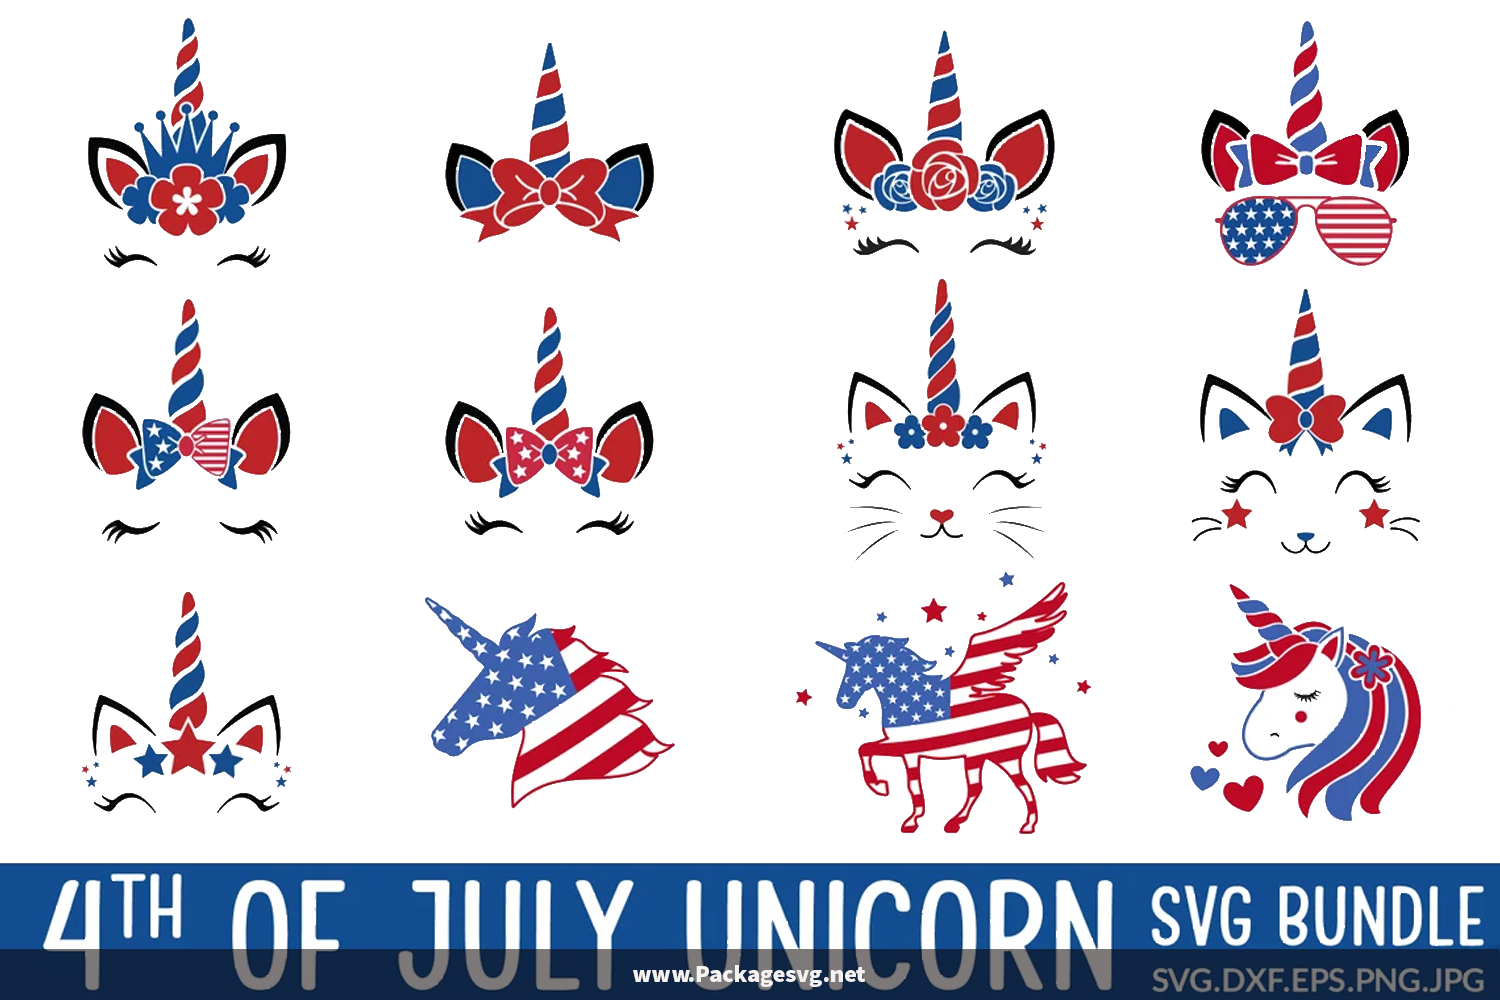 4th of July Unicorn SVG Bundle